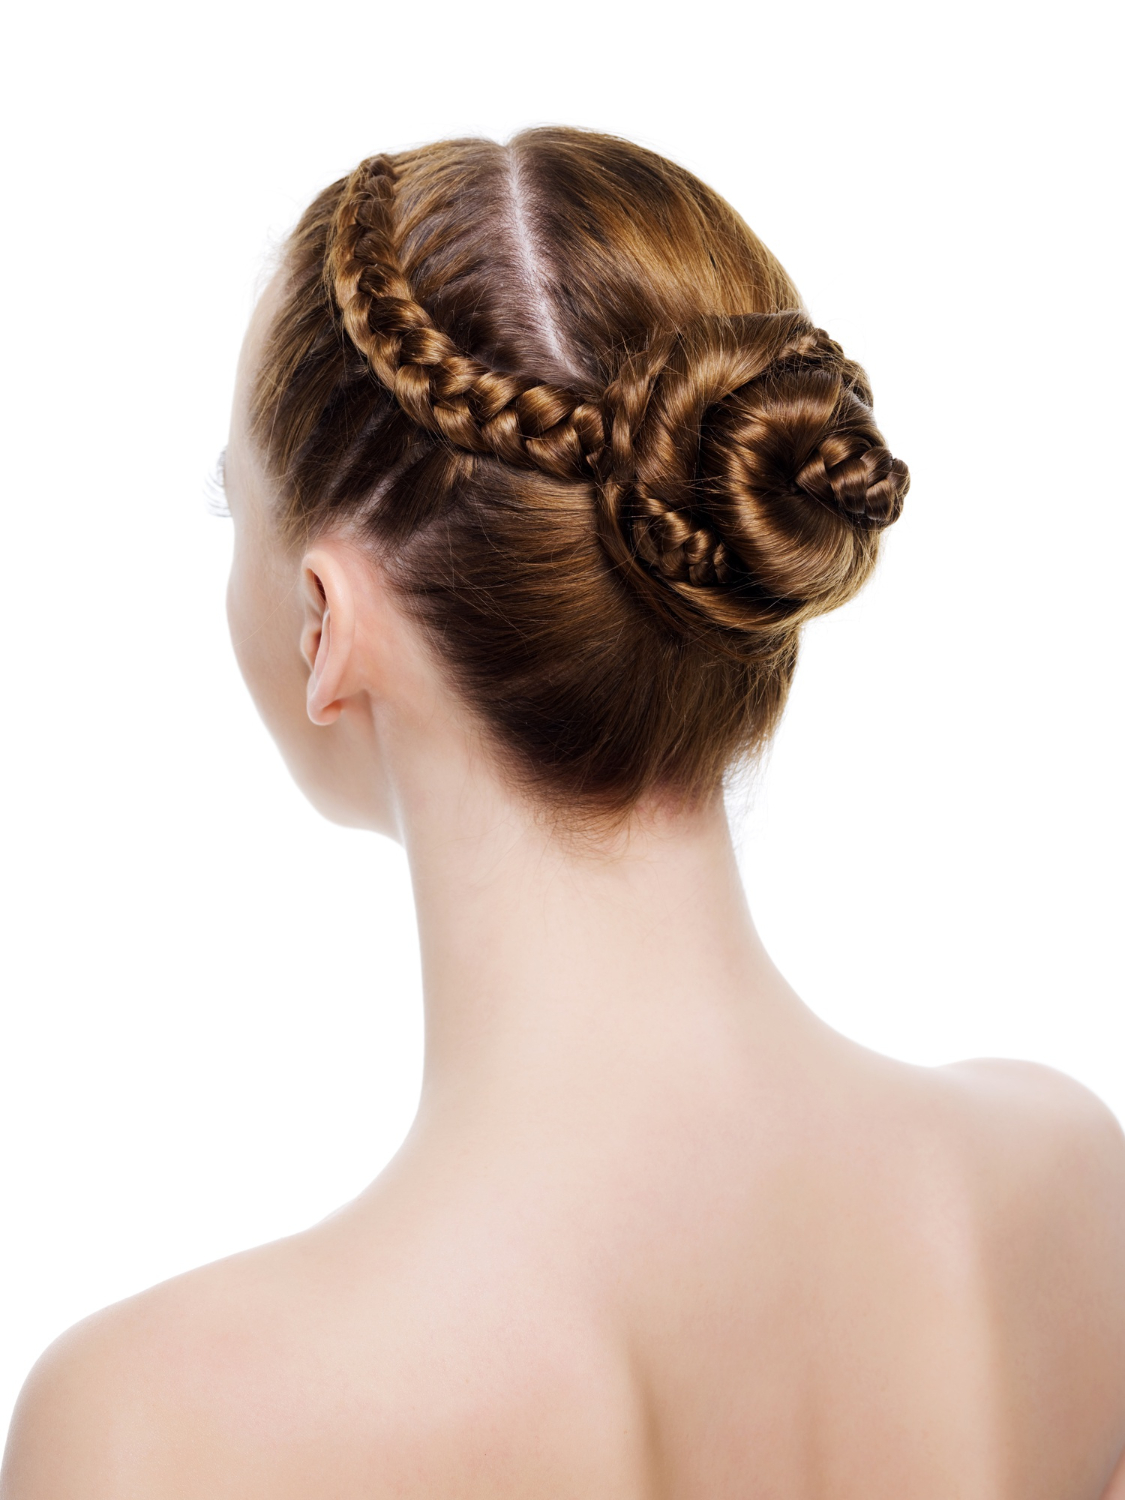 DIY Greek Goddess Hair Tutorial | Peinados con trenzas faciles, Cabello  humano, Peinados románticos